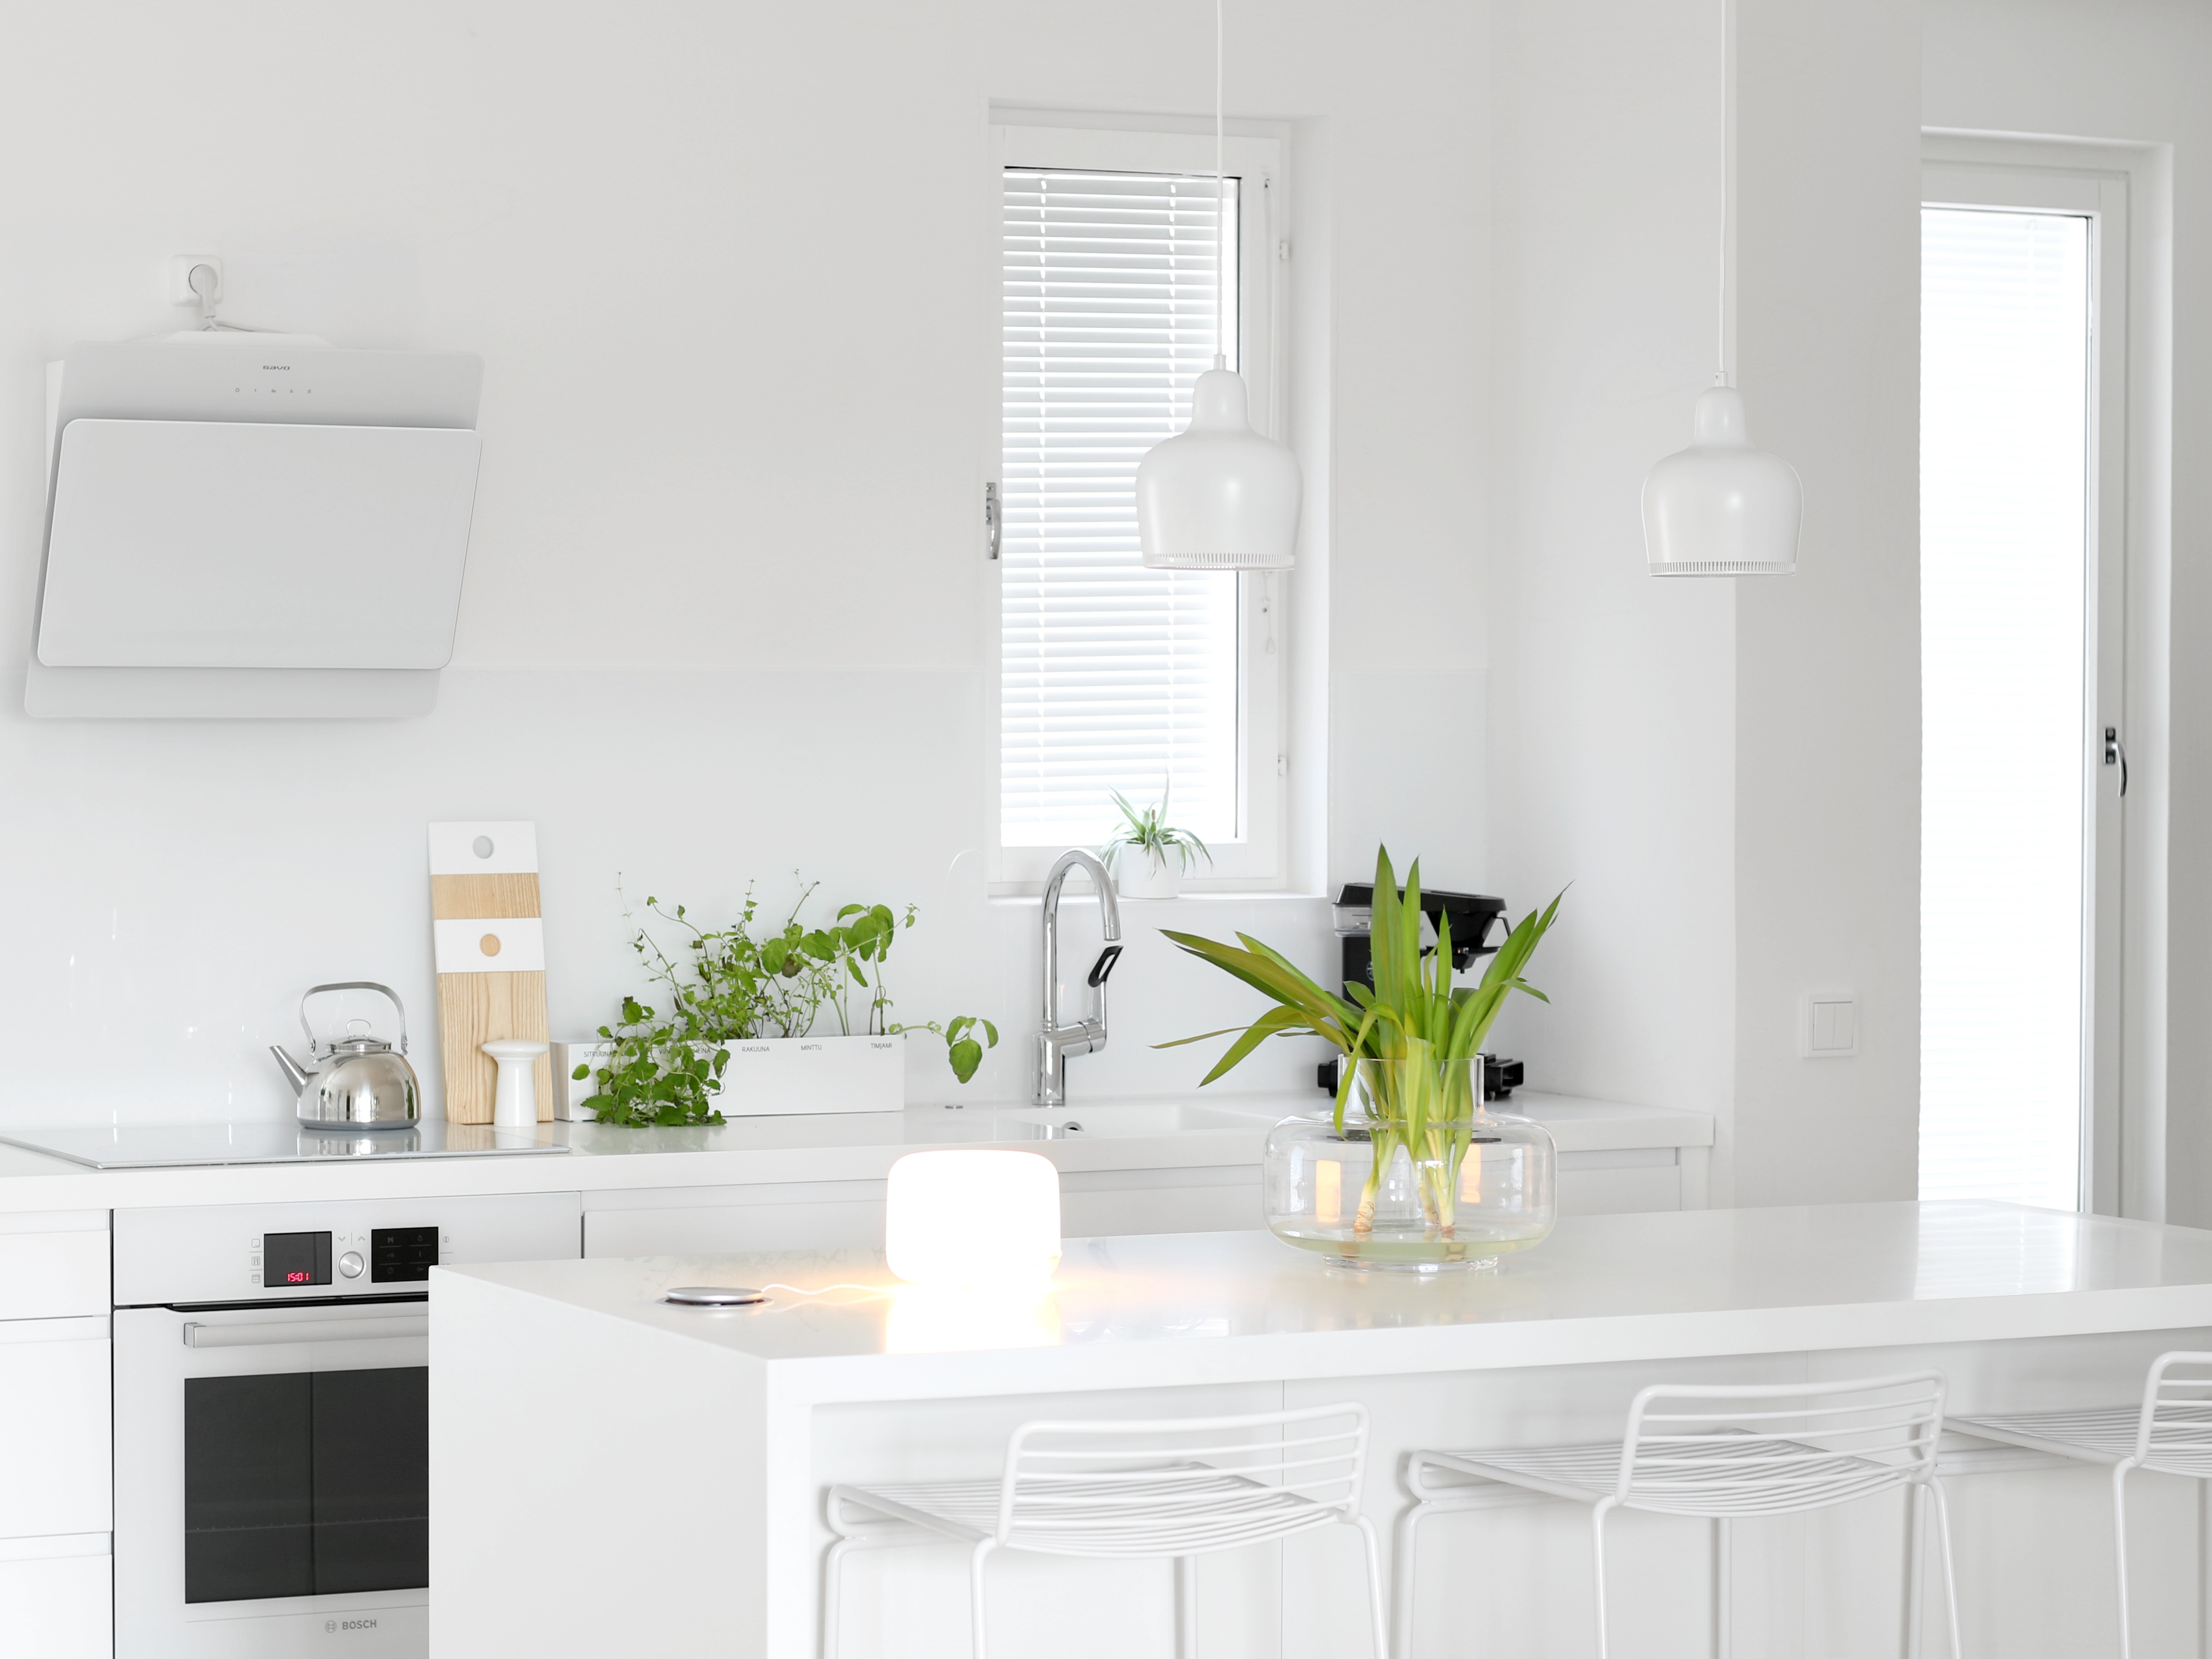 Omakotivalkoinen valkoinen keittiö minimalistinen sisustus skandinaavinen koti vihersisustus